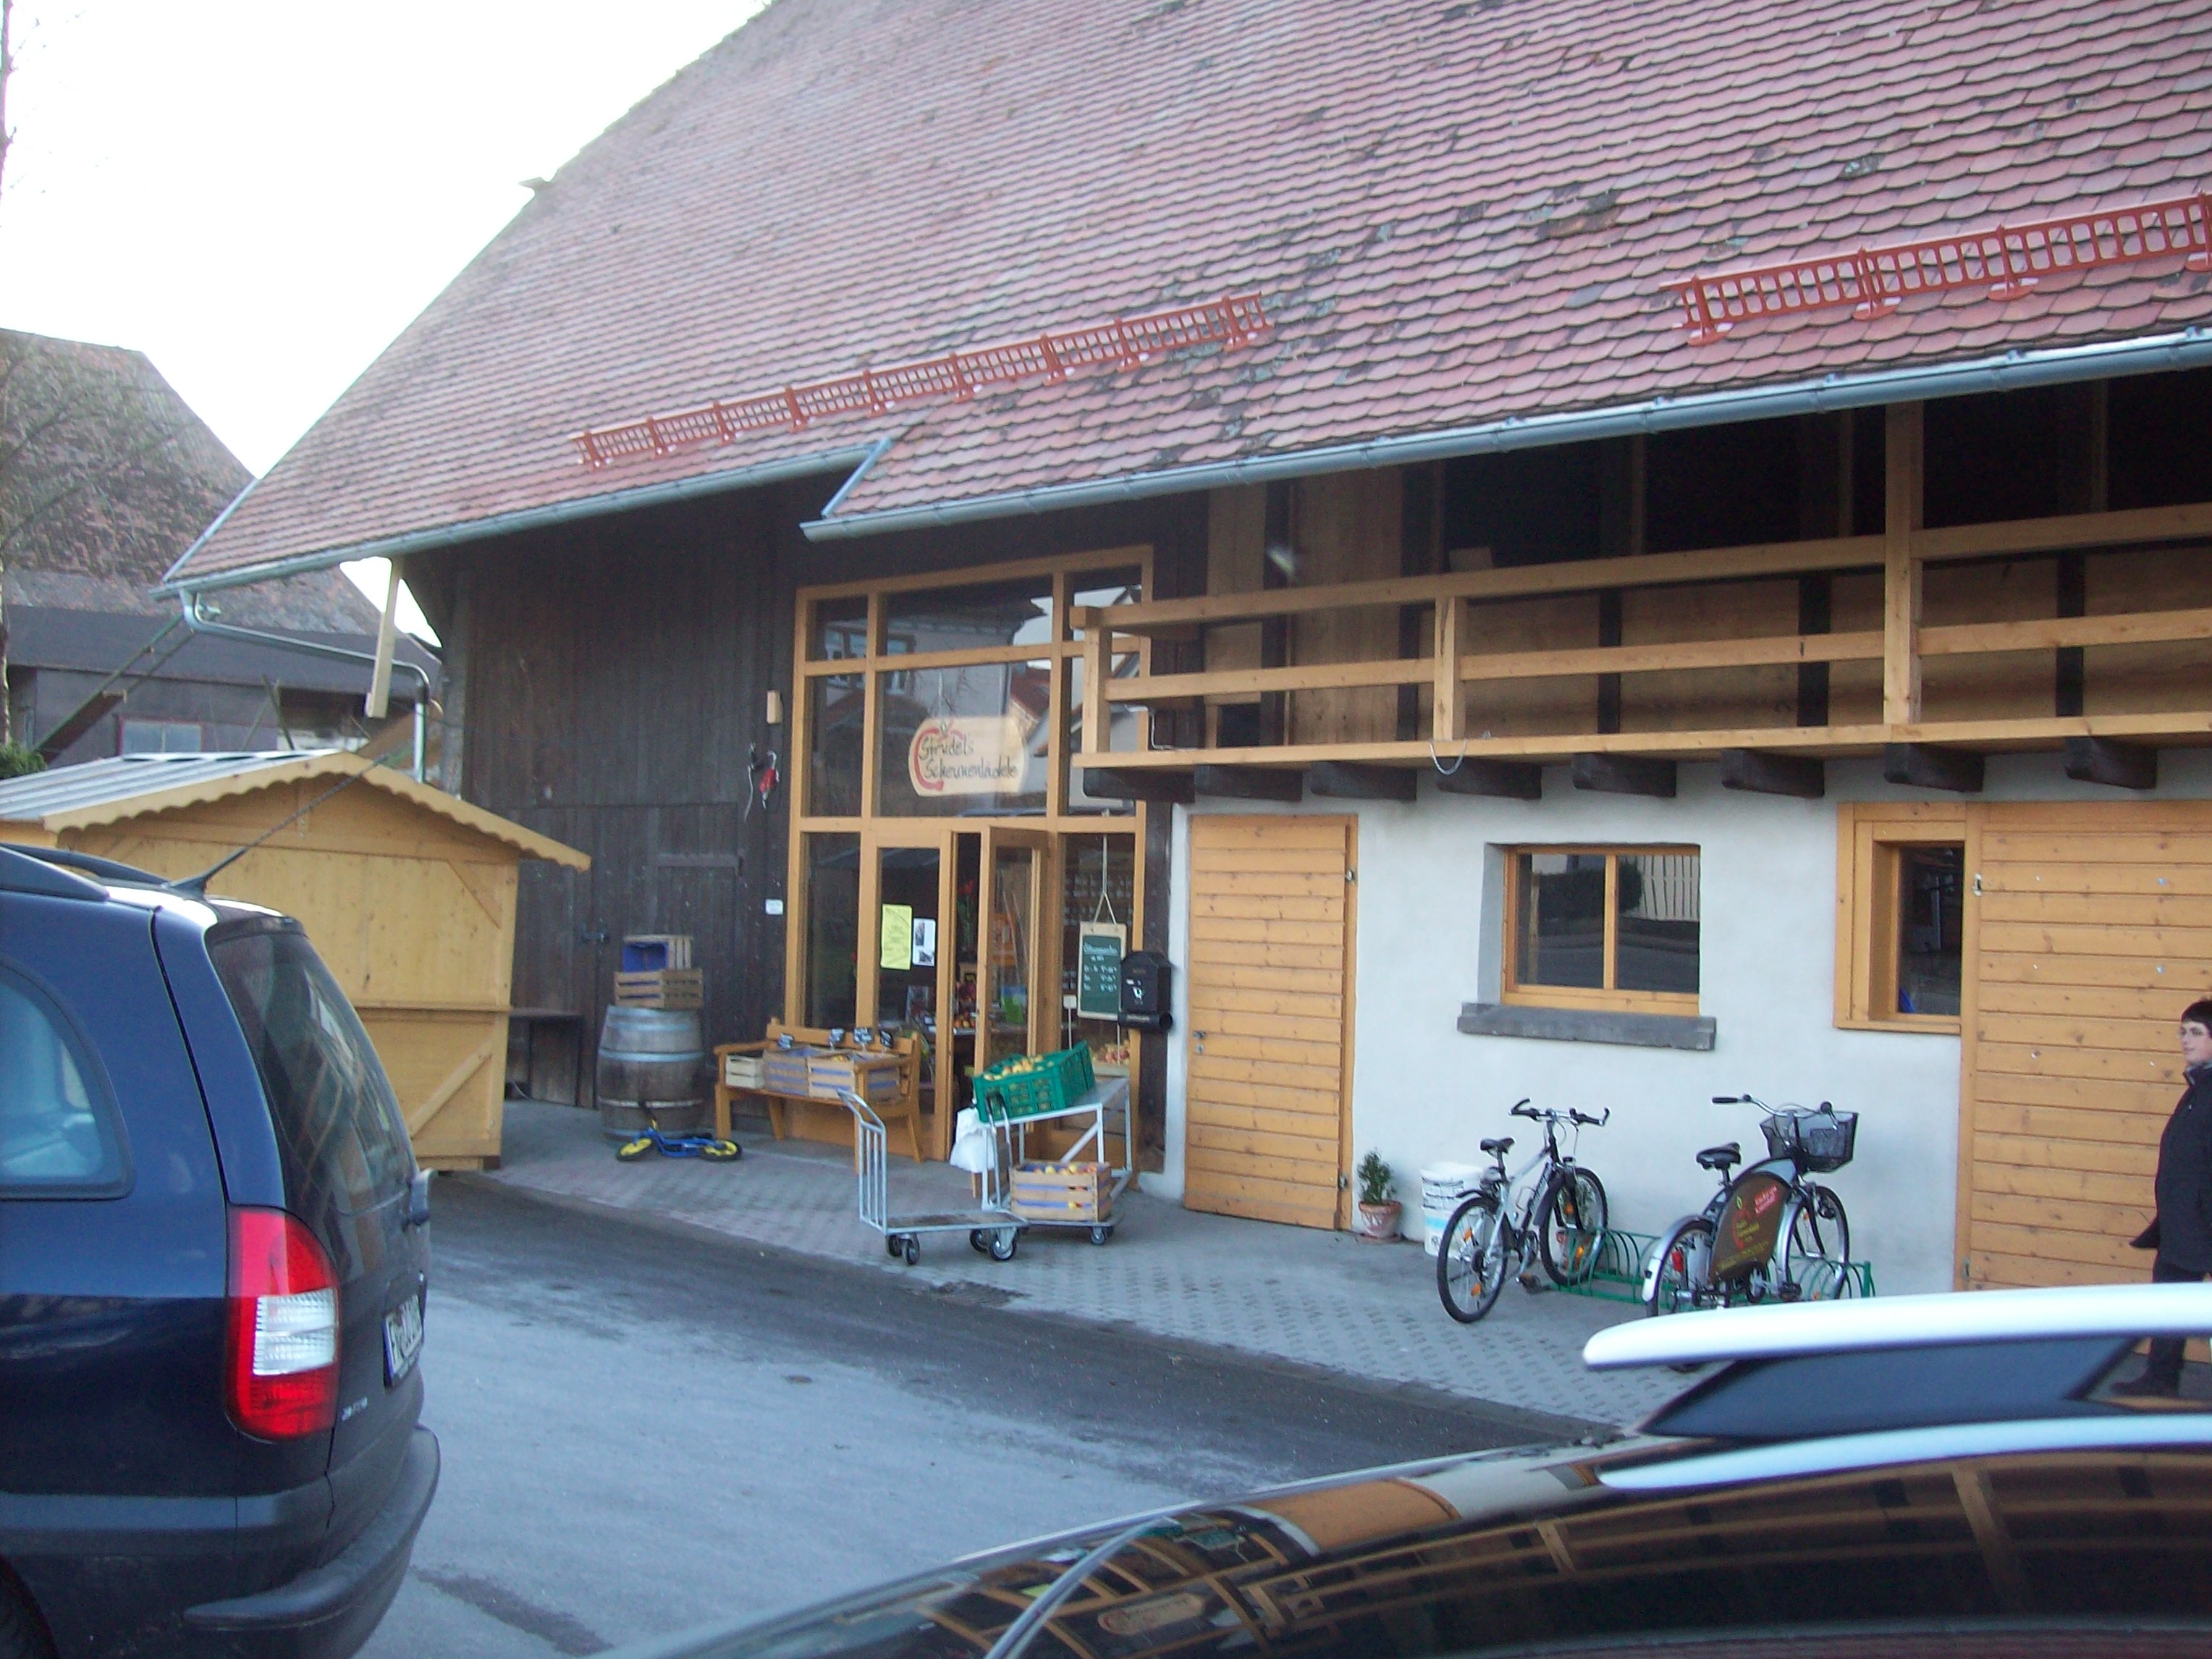 Bild 1 Strudel's Scheunenlädele in Kirchzarten